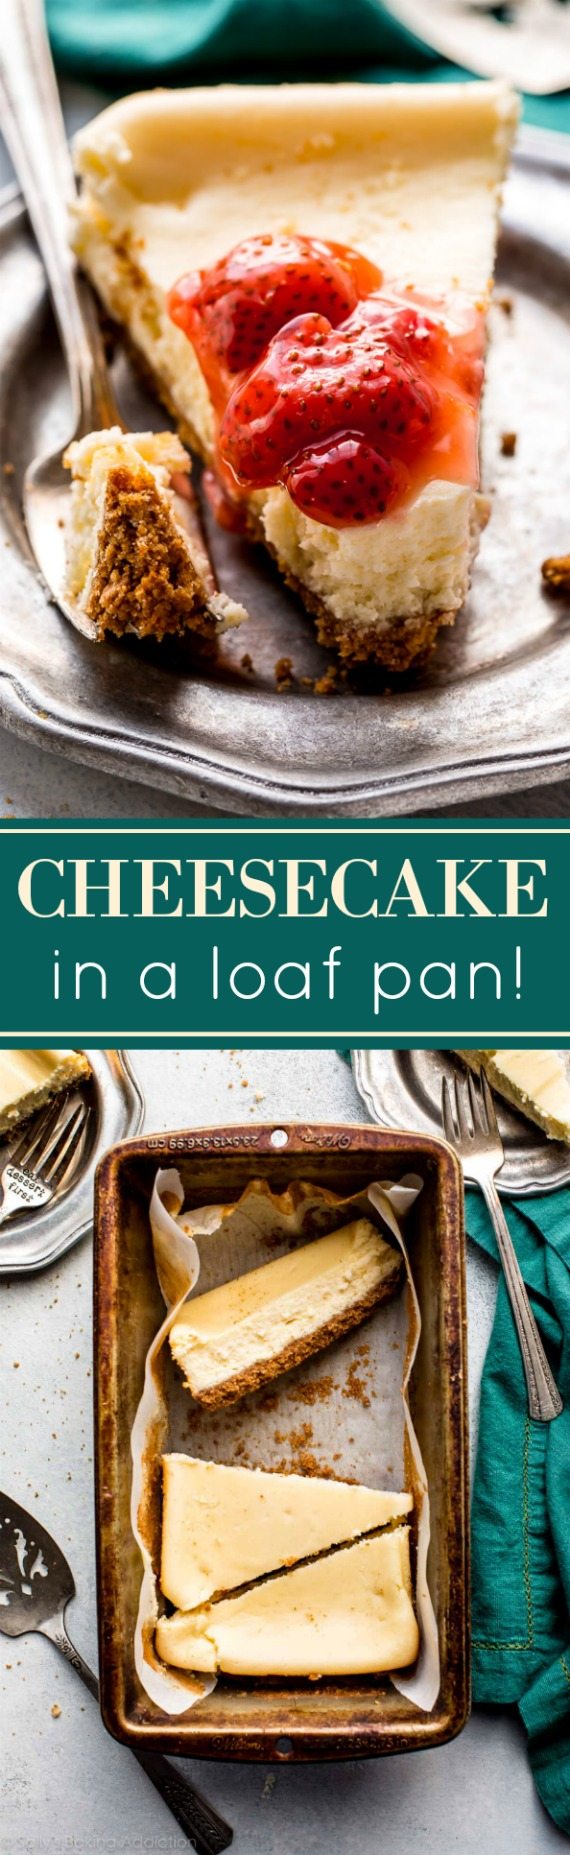 Le cheesecake en petits lots est si facile! Faites ces 5 tranches délicieusement crémeuses et épaisses dans un moule à pain! Recette sur sallysbakingaddiction.com